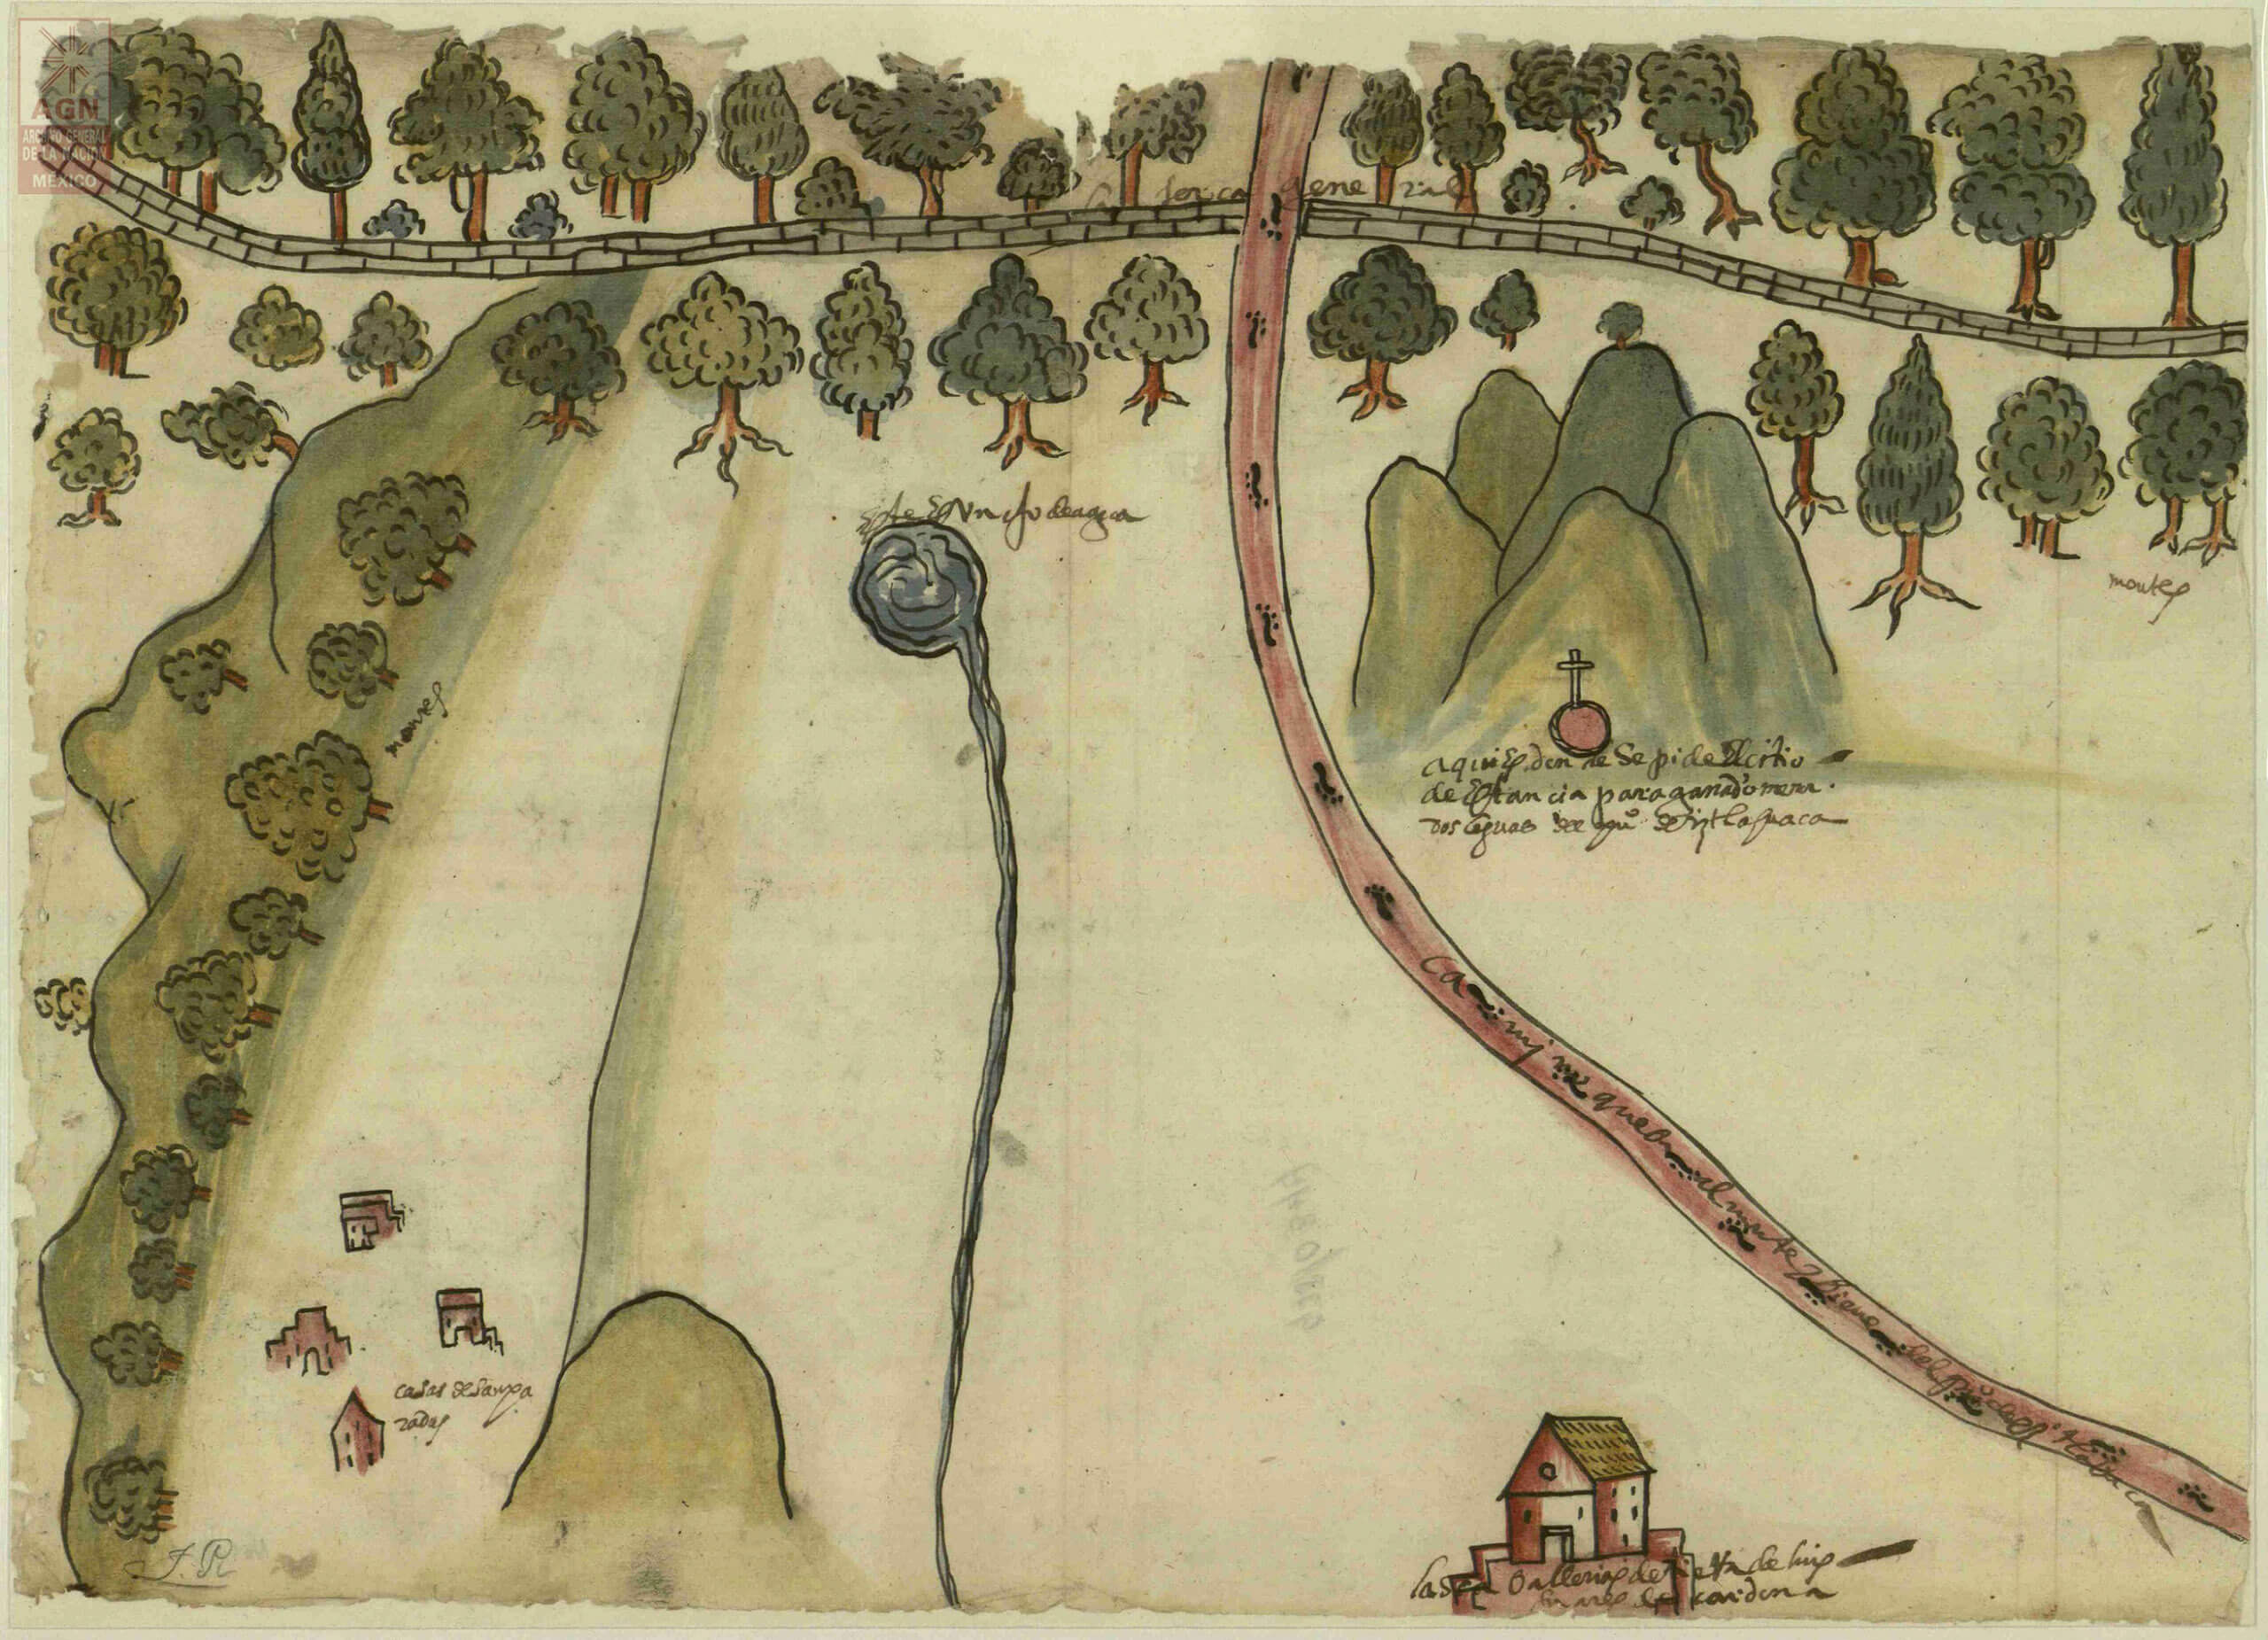 Mapa de Ixtlahuaca, Estado de México | In Tlilli in Tlapalli. Imágenes de la nueva tierra: identidad indígena después de la conquista | Museo Amparo, Puebla